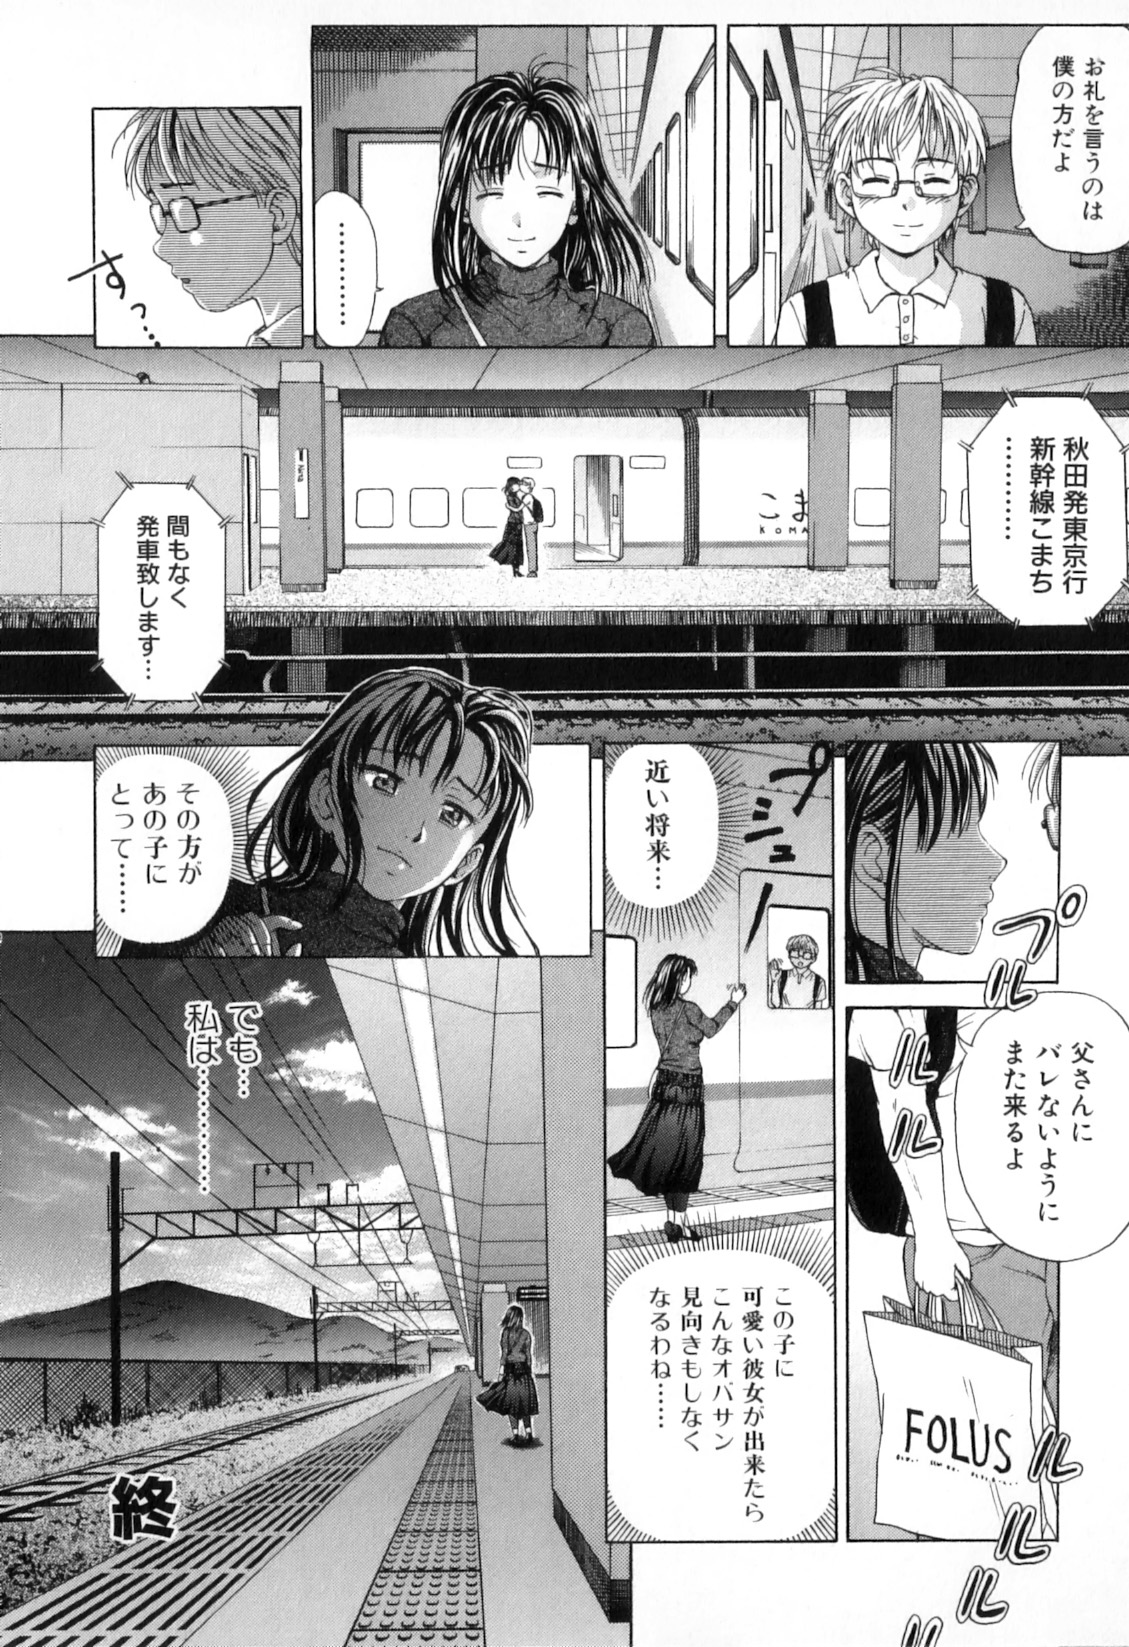 [Anthology] Boshi Chijou Kitan 2 page 38 full